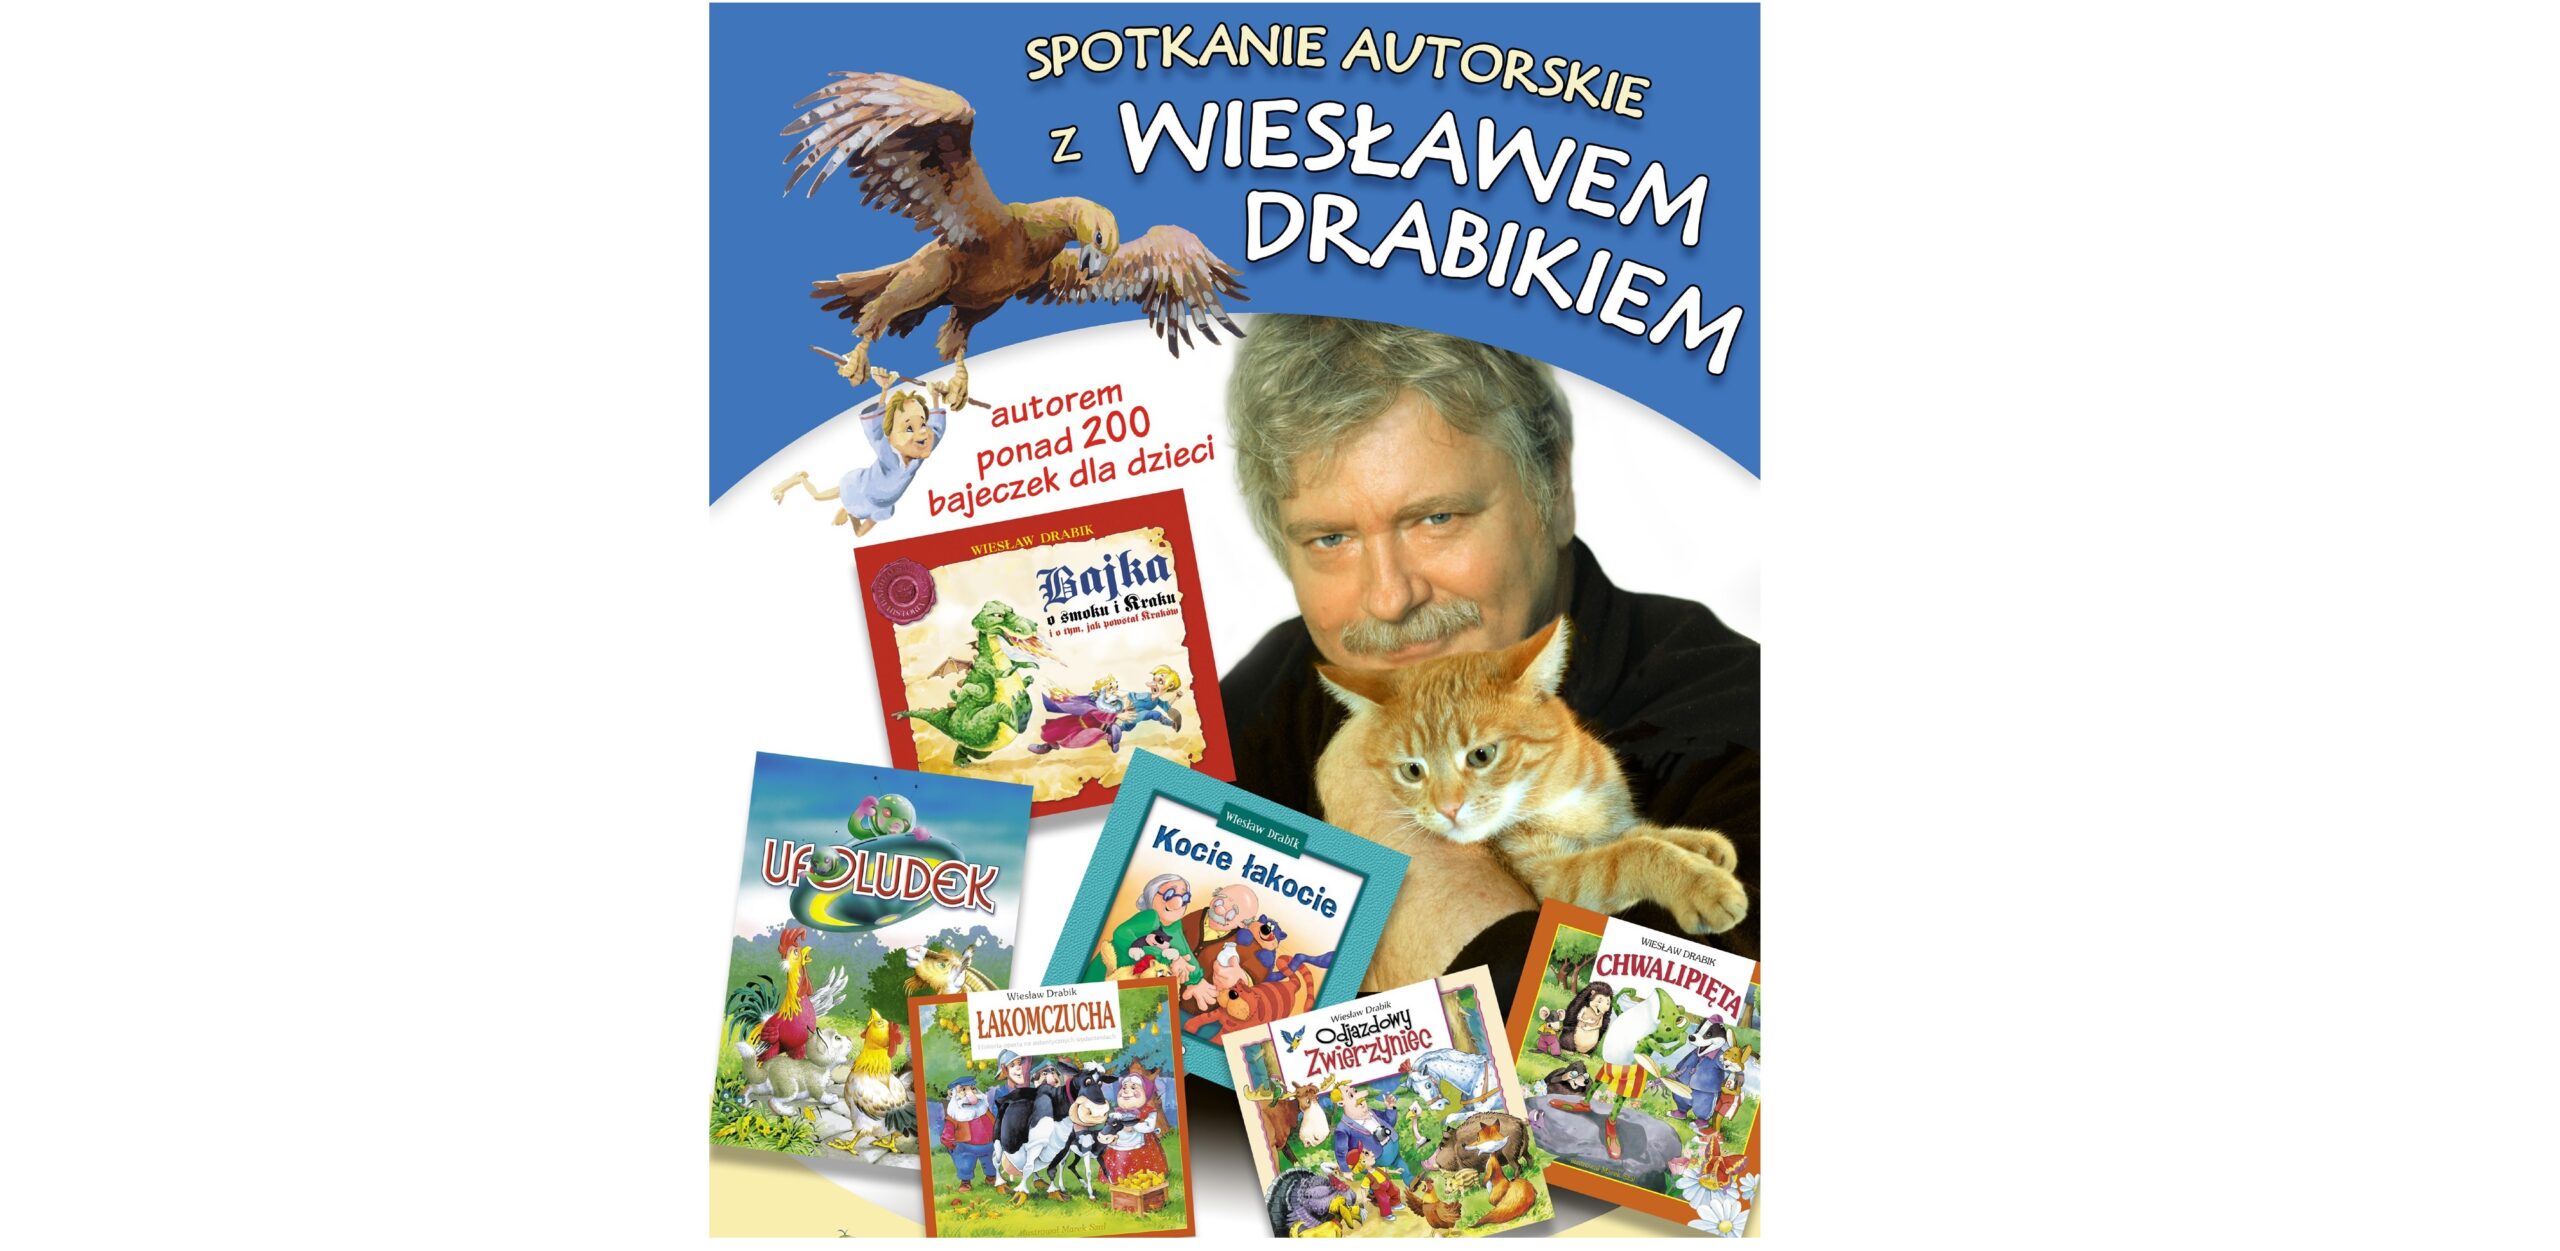 Grafika przedstawia mężczyne w kotem na rękach oraz okładki ksiązek dla dzieci, których jest autorem